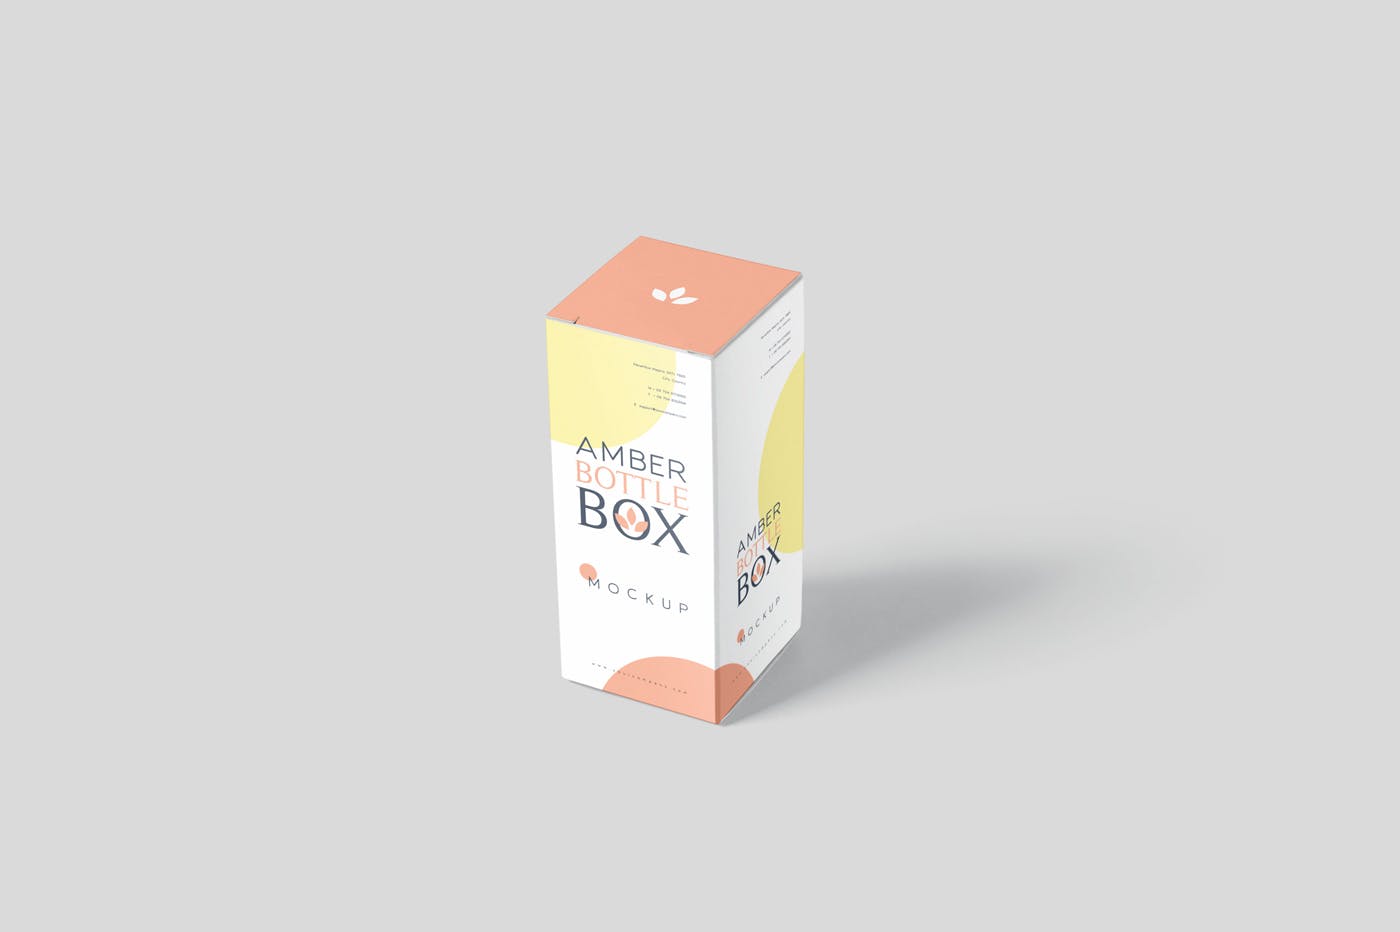 药物瓶&包装纸盒设计图16图库精选模板 Amber Bottle Box Mockup Set插图(2)